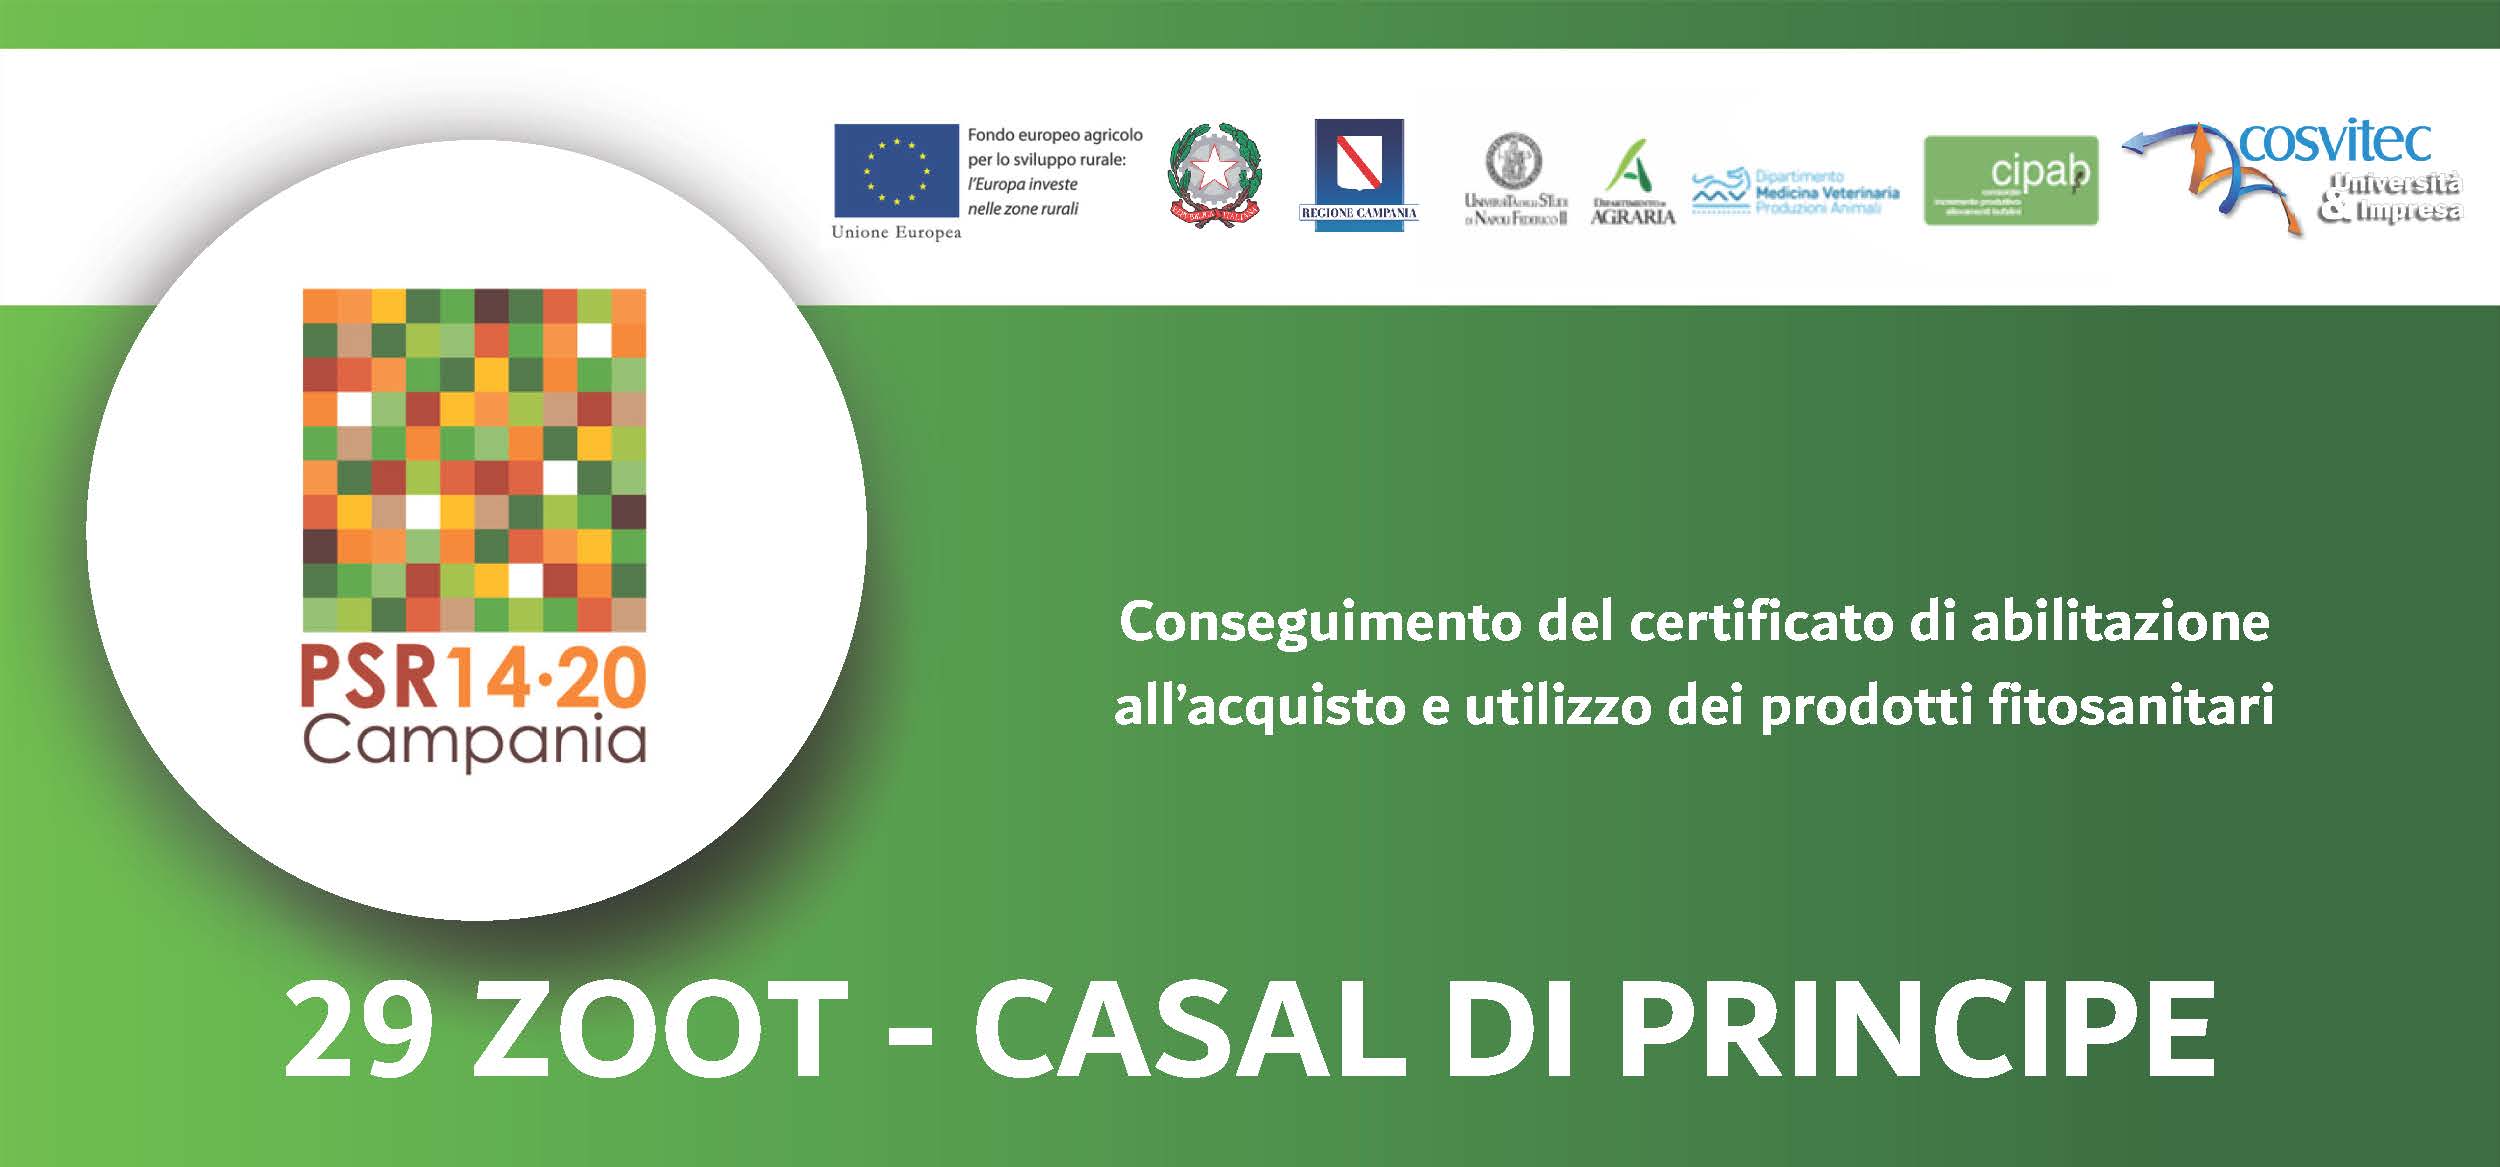 Conseguimento del certificato di abilitazione all’acquisto e utilizzo dei prodotti fitosanitari | 29 ZOOT – CASAL DI PRINCIPE